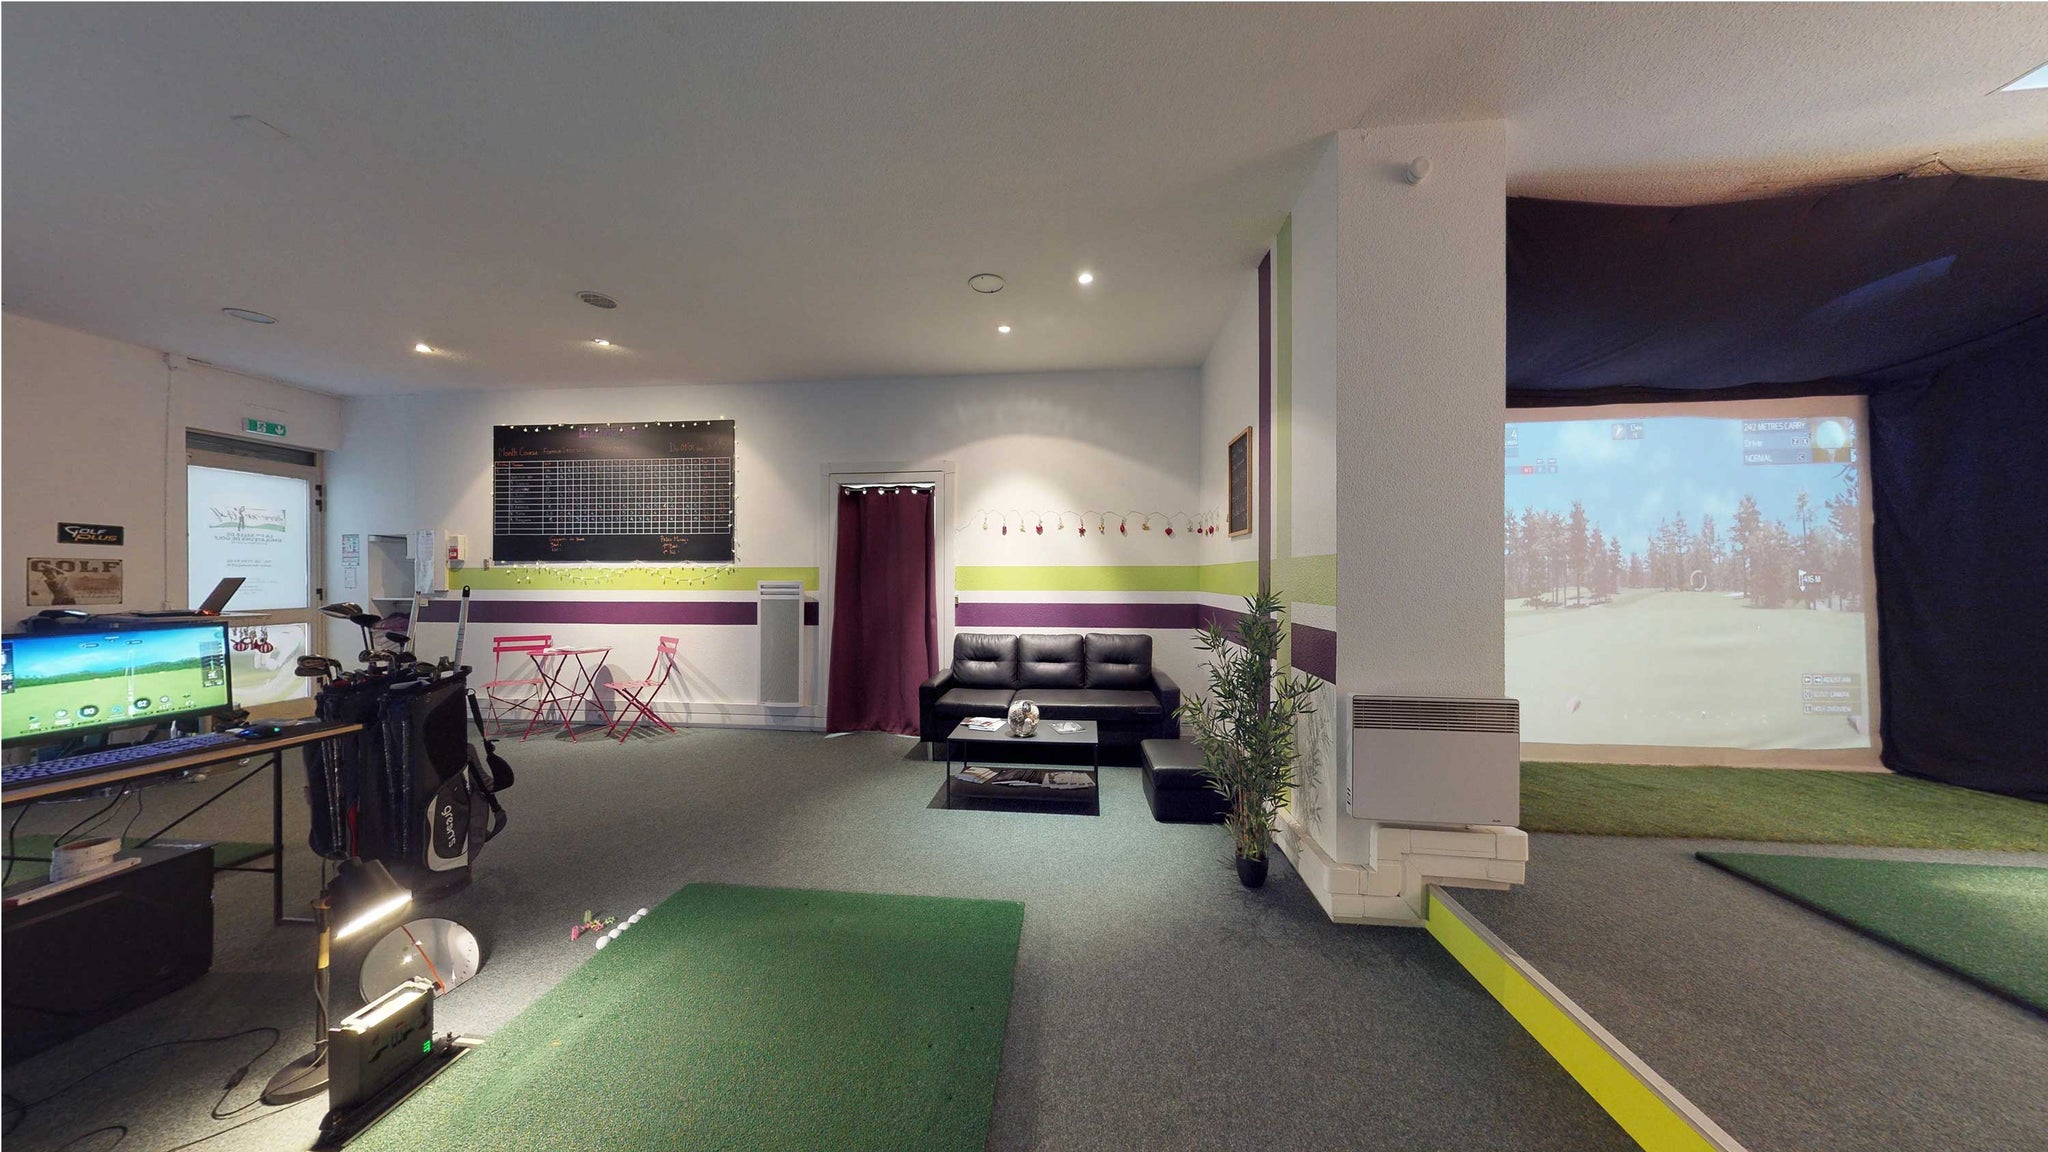 golf indoor toulouse, simulateur de golf toulouse, skytrak